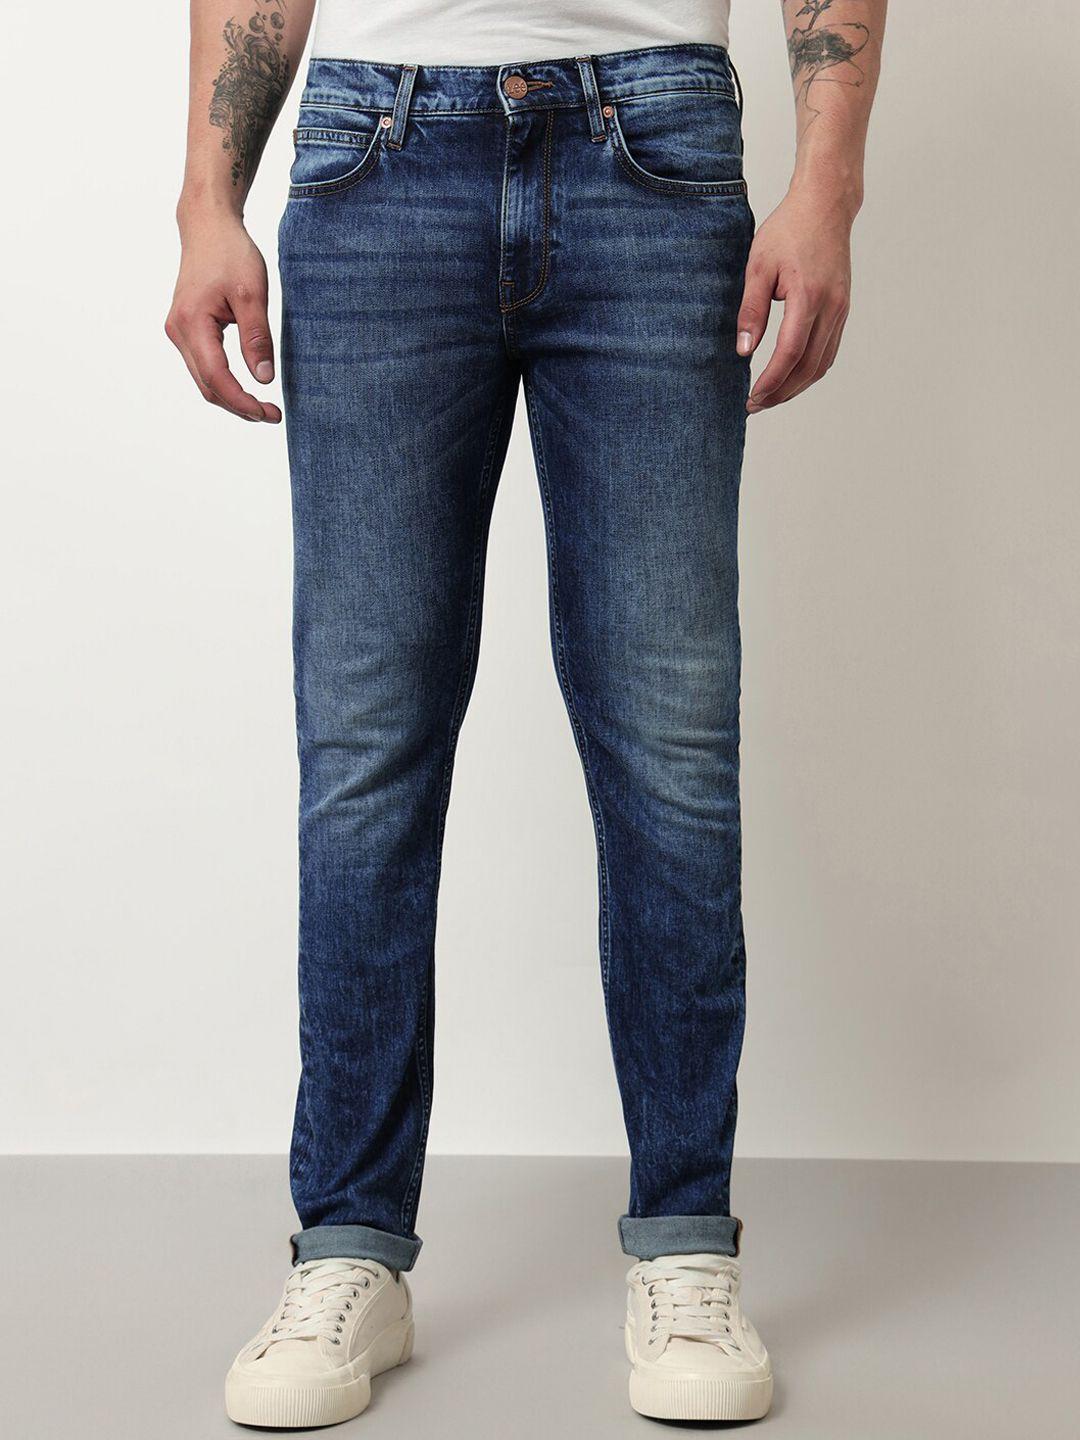 lee men bruce skinny fit light fade stretchable cotton regular jeans